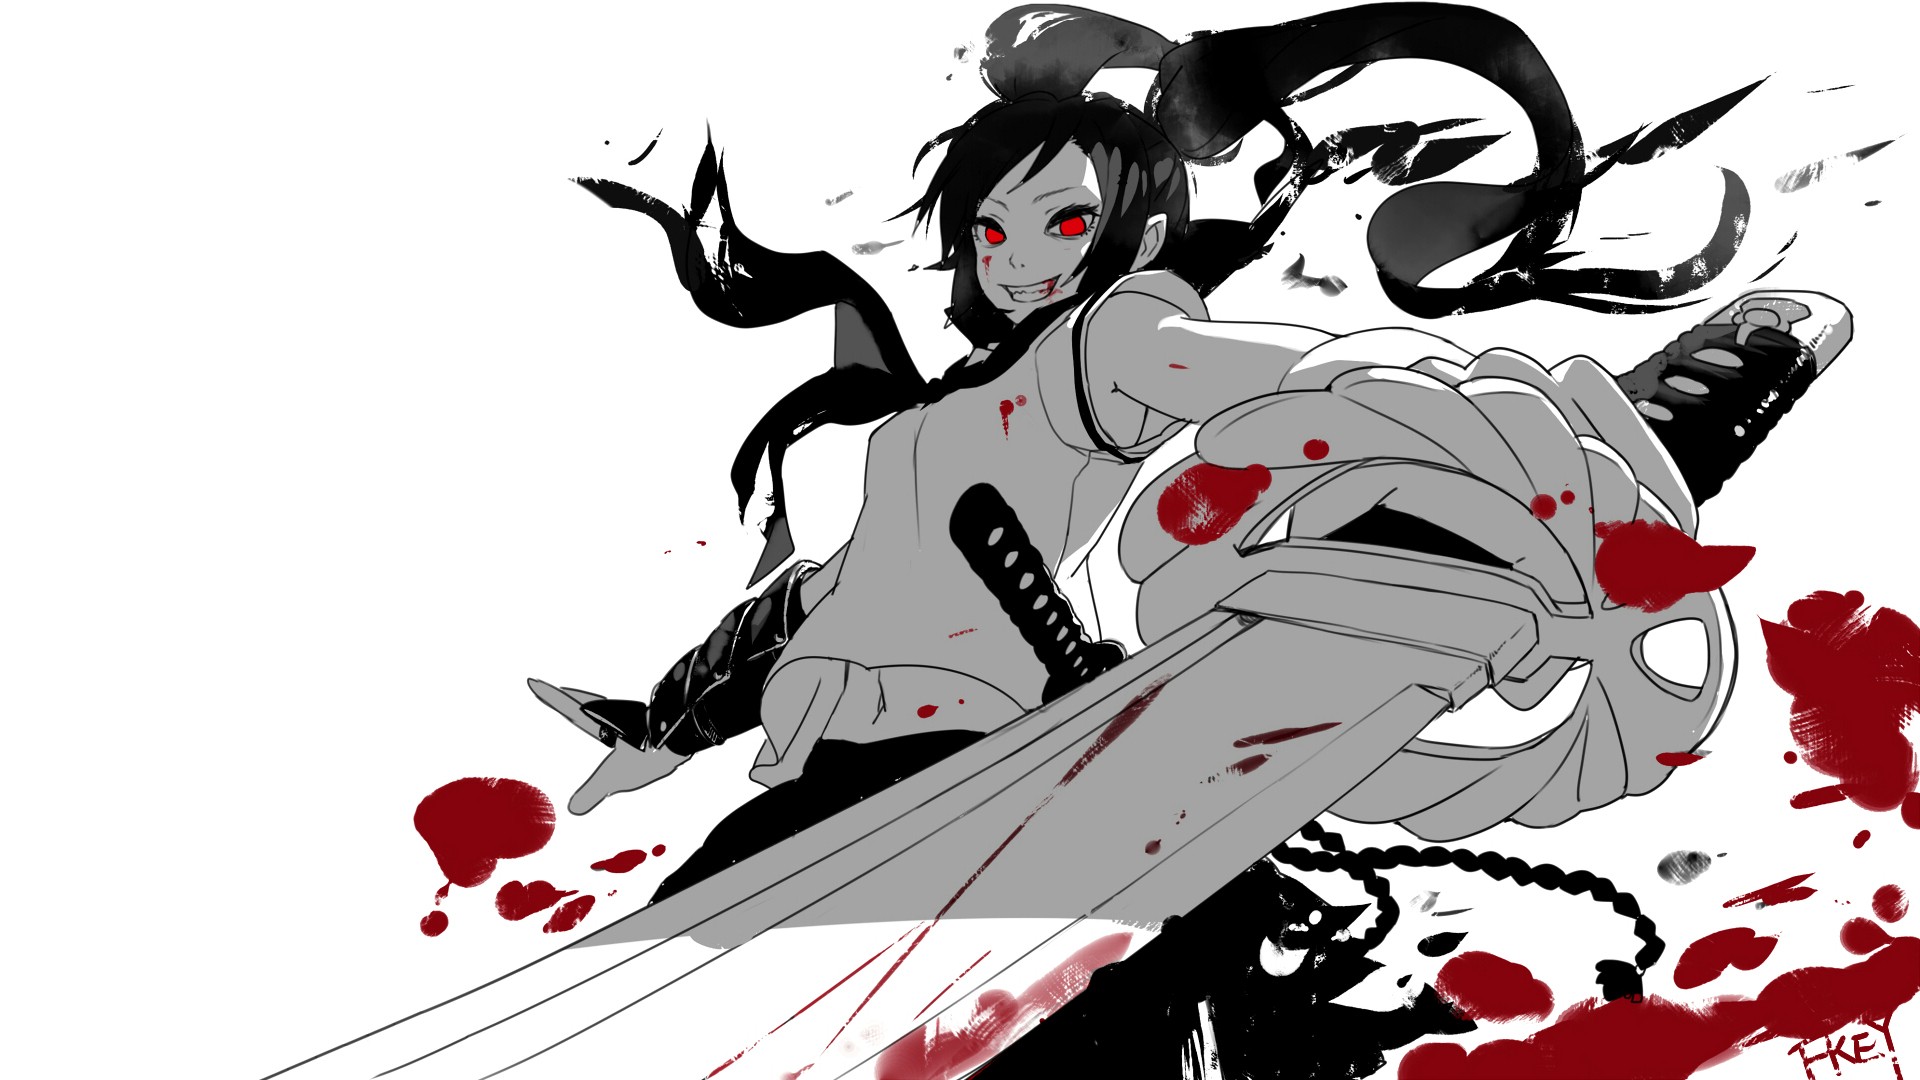 Wallpaper Angry girl with katana, anime, original